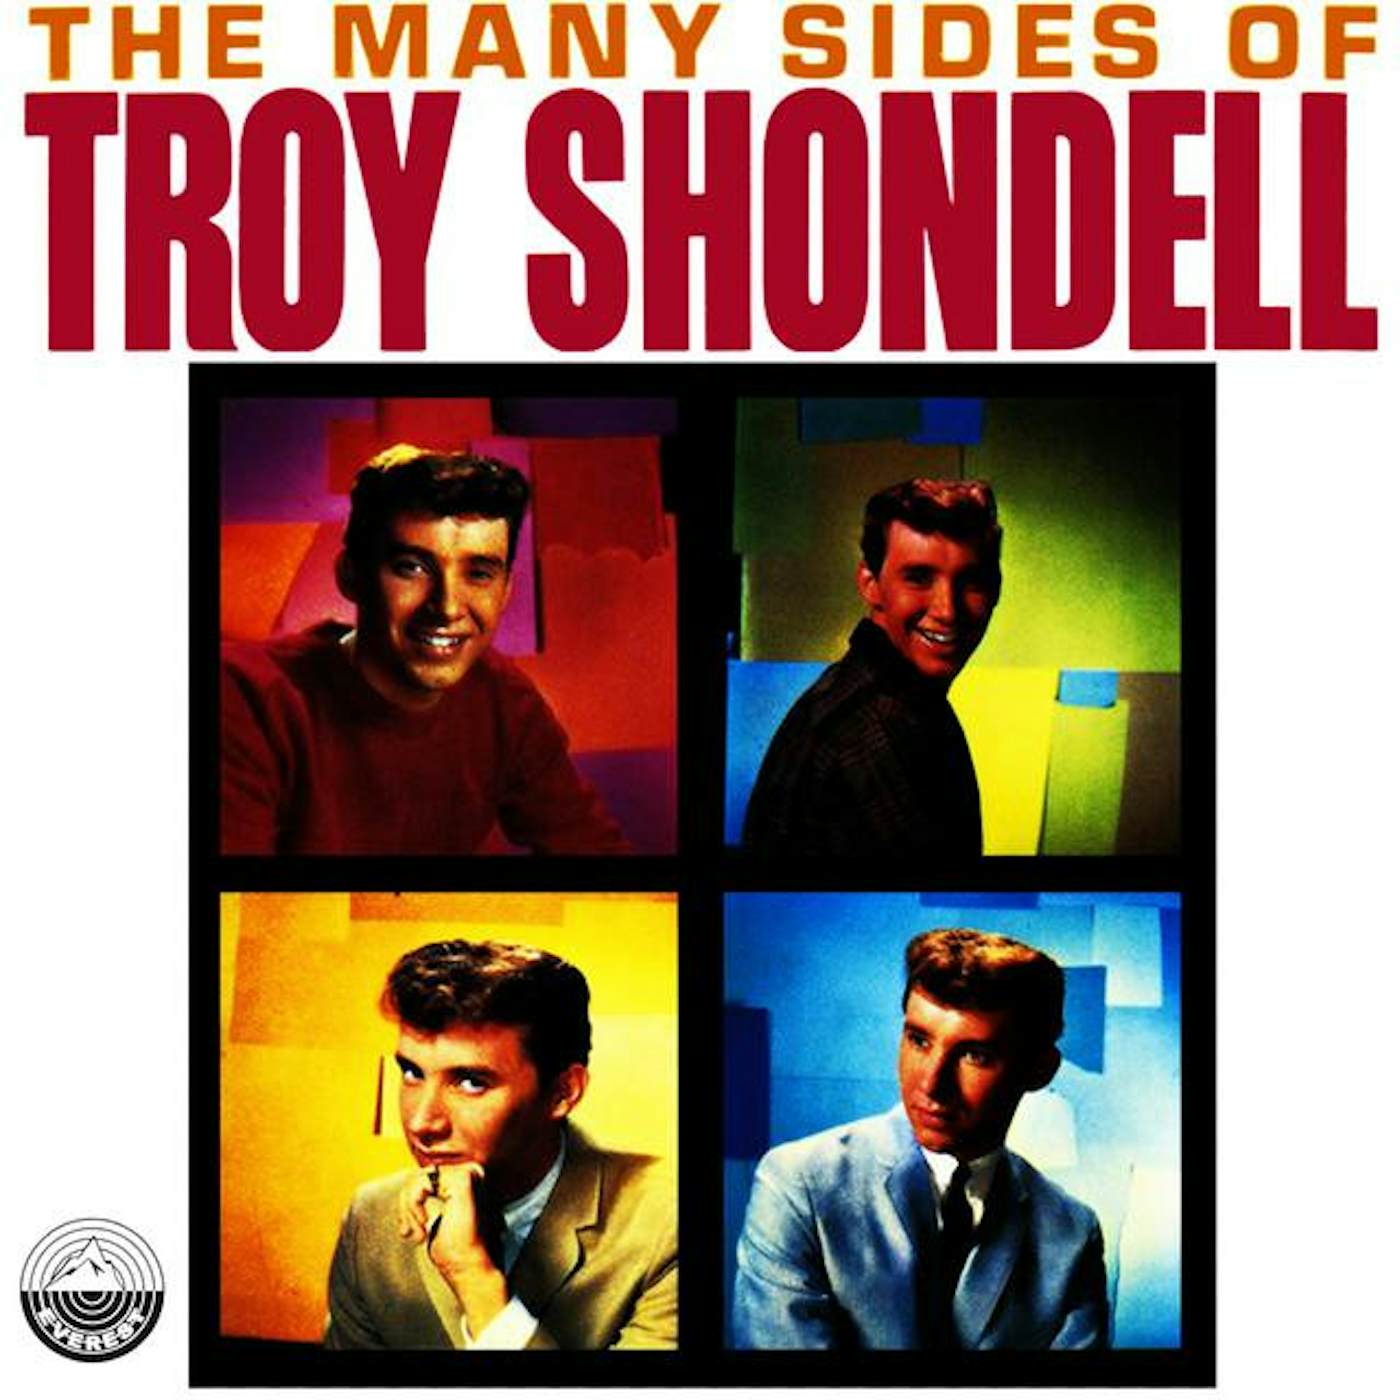 Troy Shondell